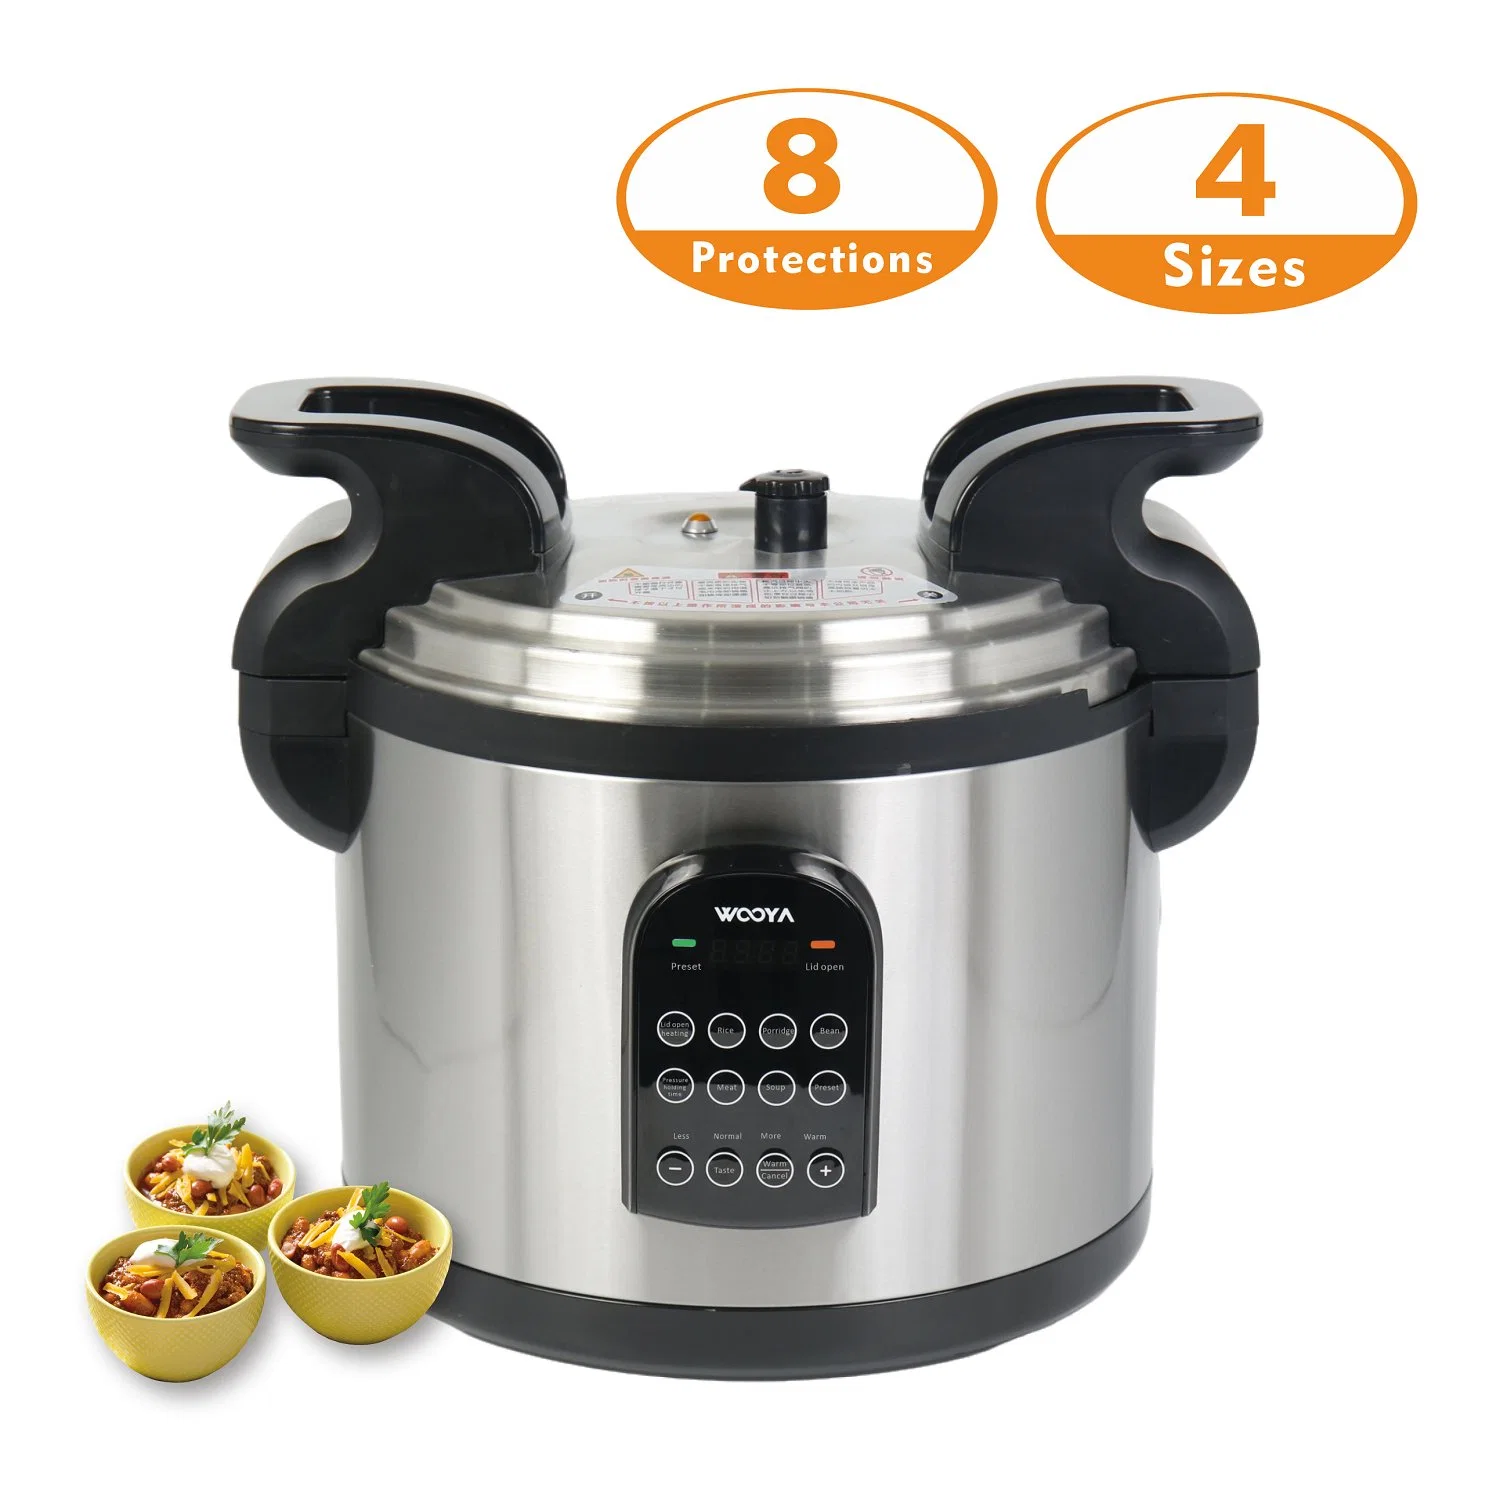 Мультиварка Horeca Pressure Cooker с 8 электрическими защитными функциями для тяжелых условий эксплуатации Использование на кухне